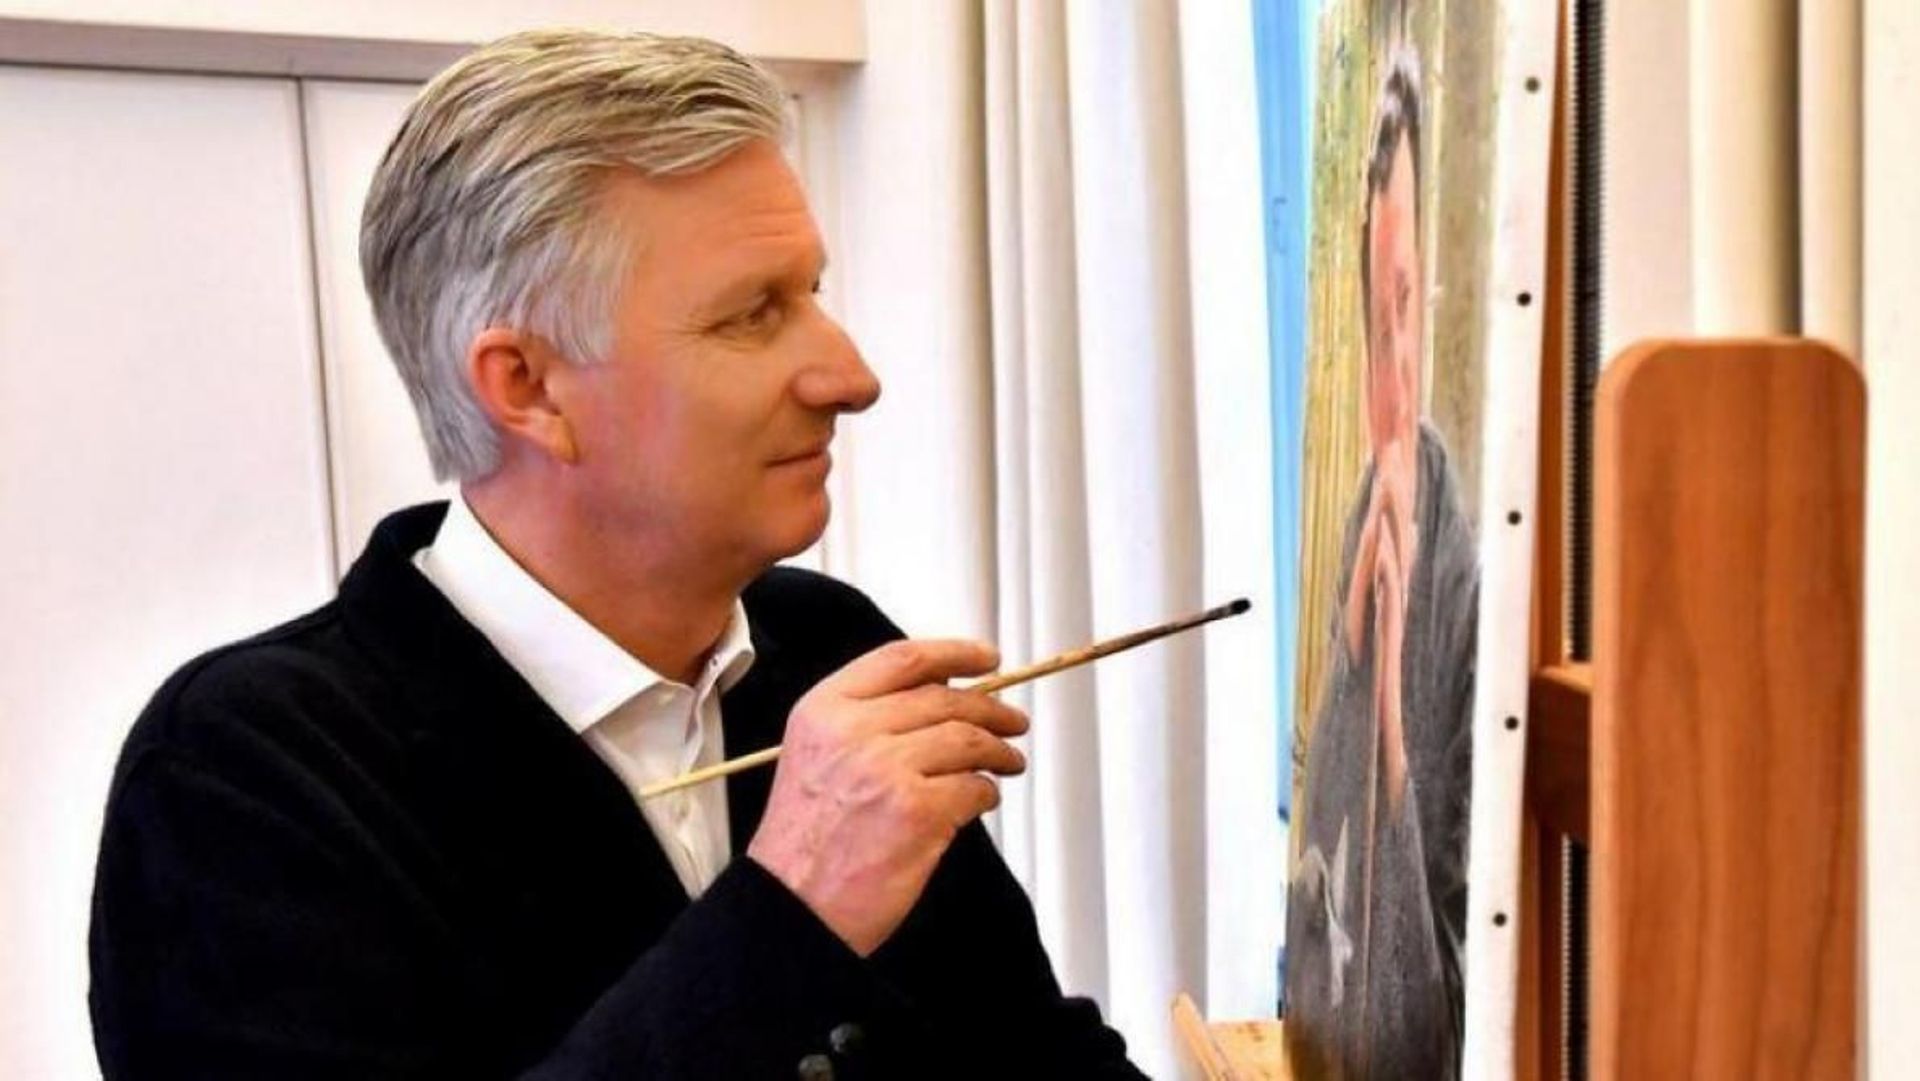 Philippe peint… Deux de ses toiles seront exposées au Palais royal cet été !